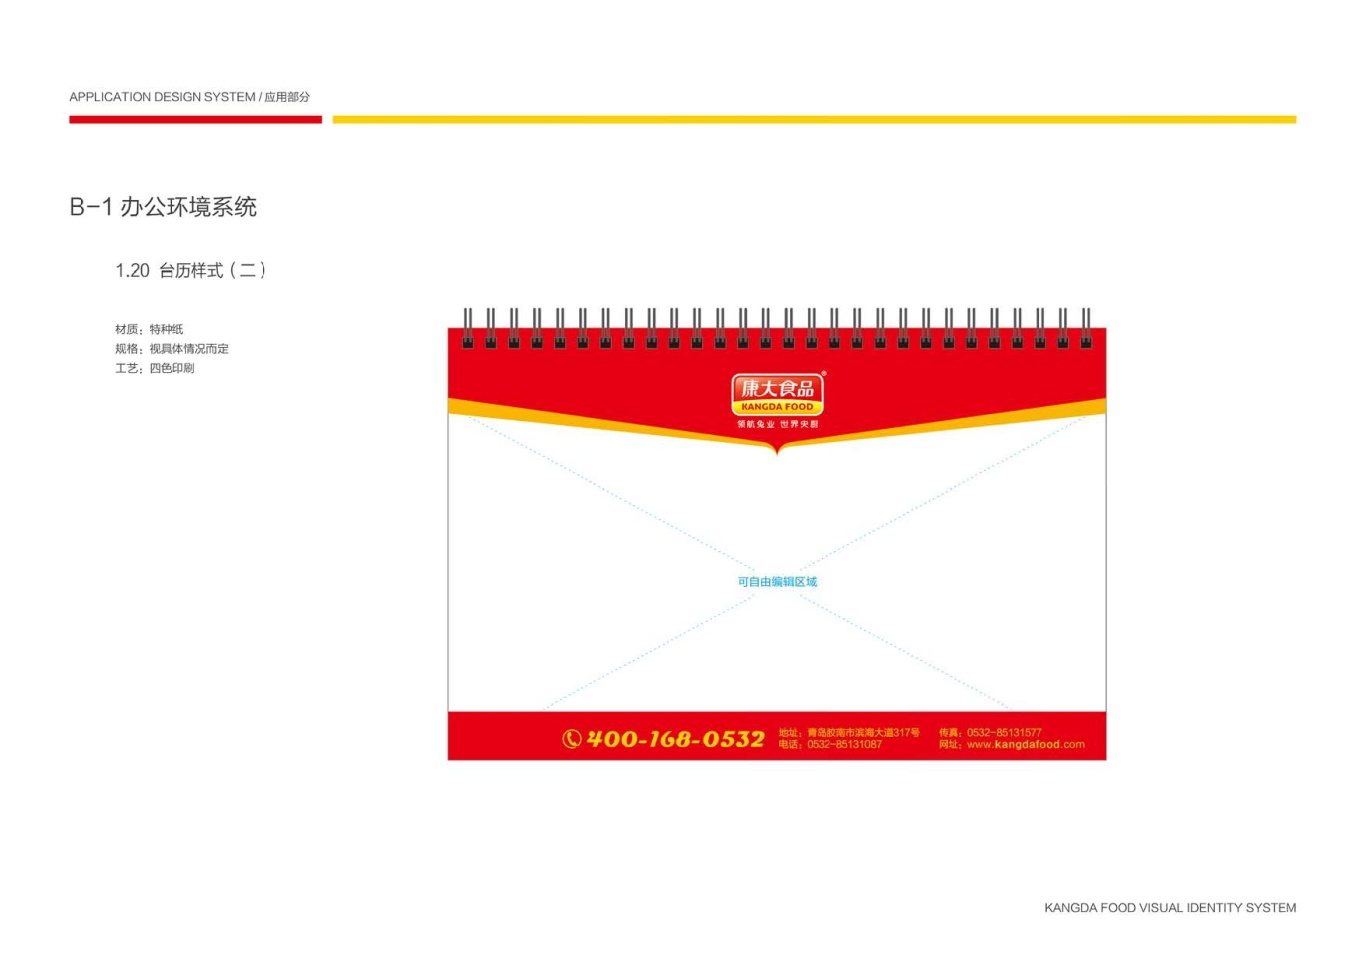 上市公司-康大食品品牌logo及VI设计图71